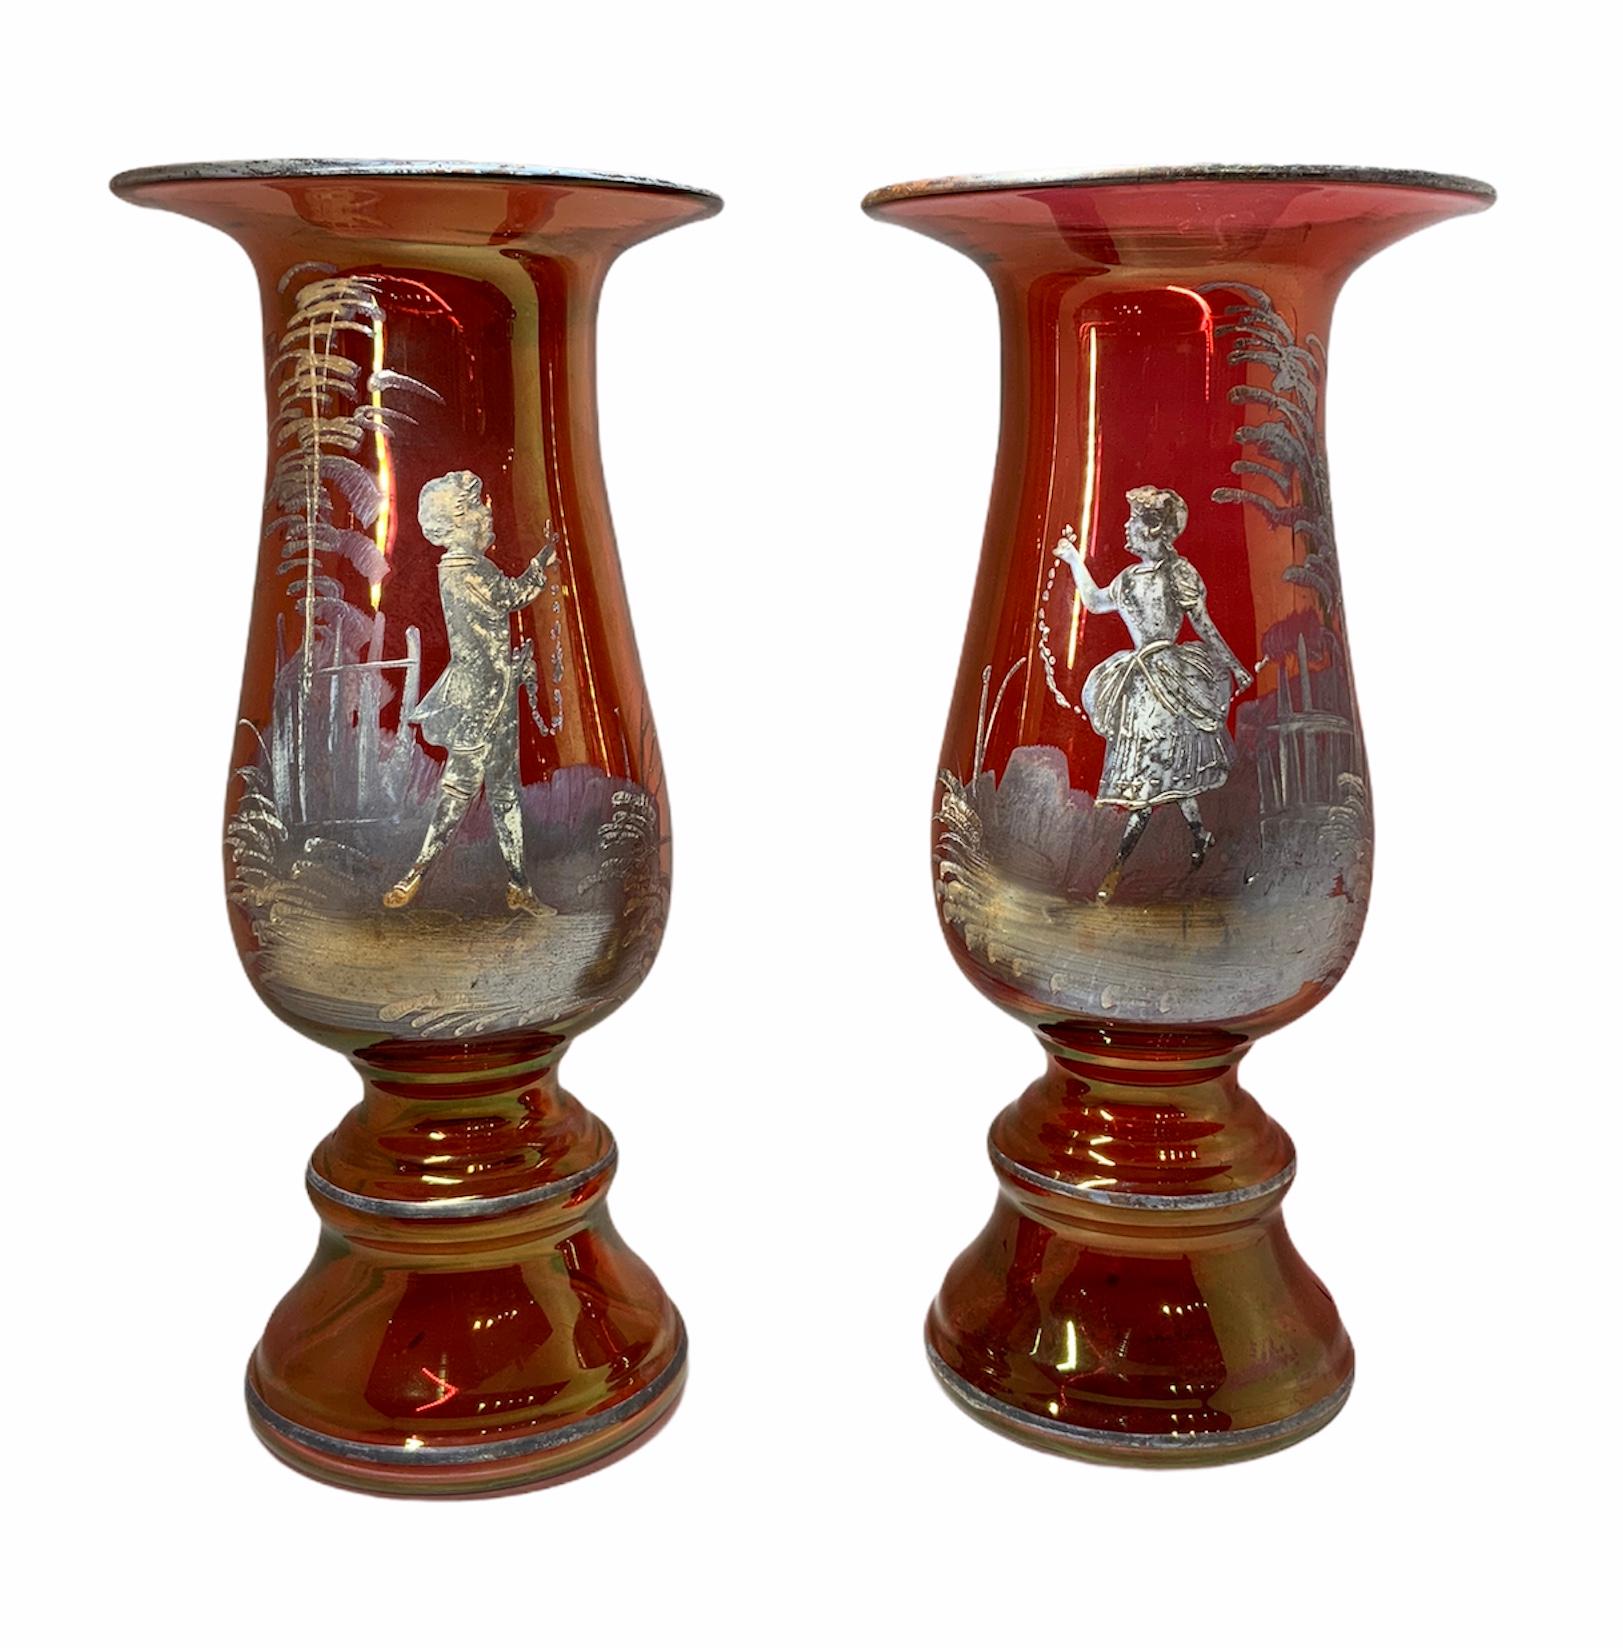 Paar Mary Gregory Vasen aus bernsteinfarbenem/rotem Glas, handbemalt und emailliert